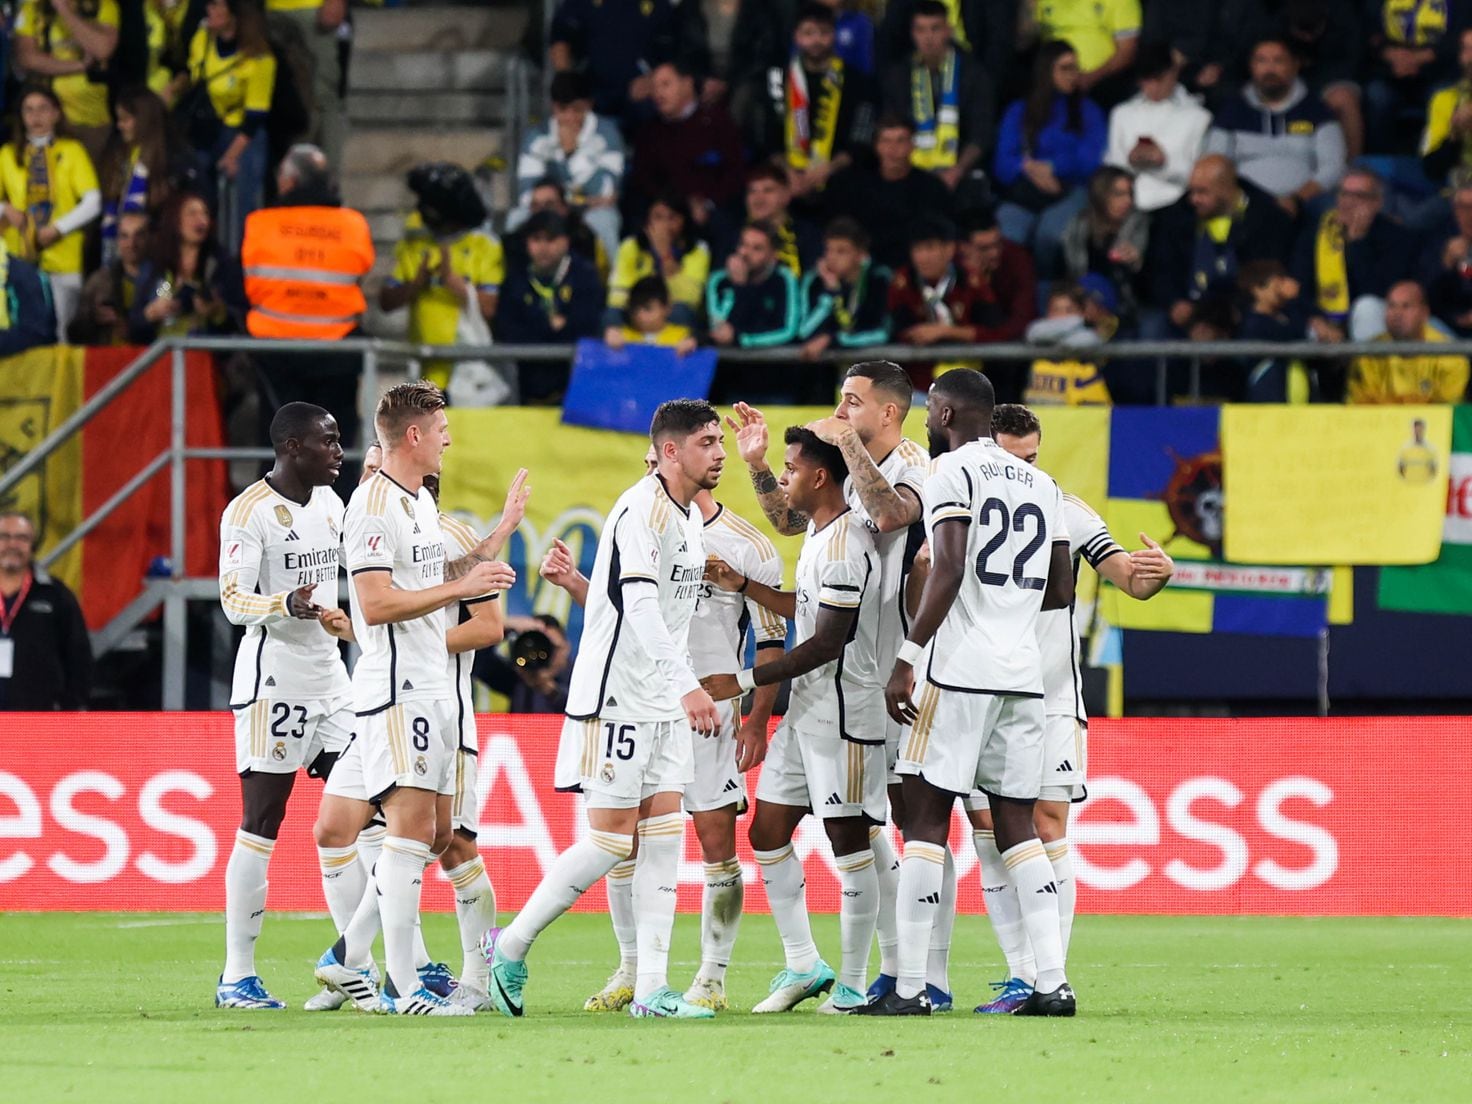 O Jogo do Fenerbahçe: Uma História de Paixão e Tradição